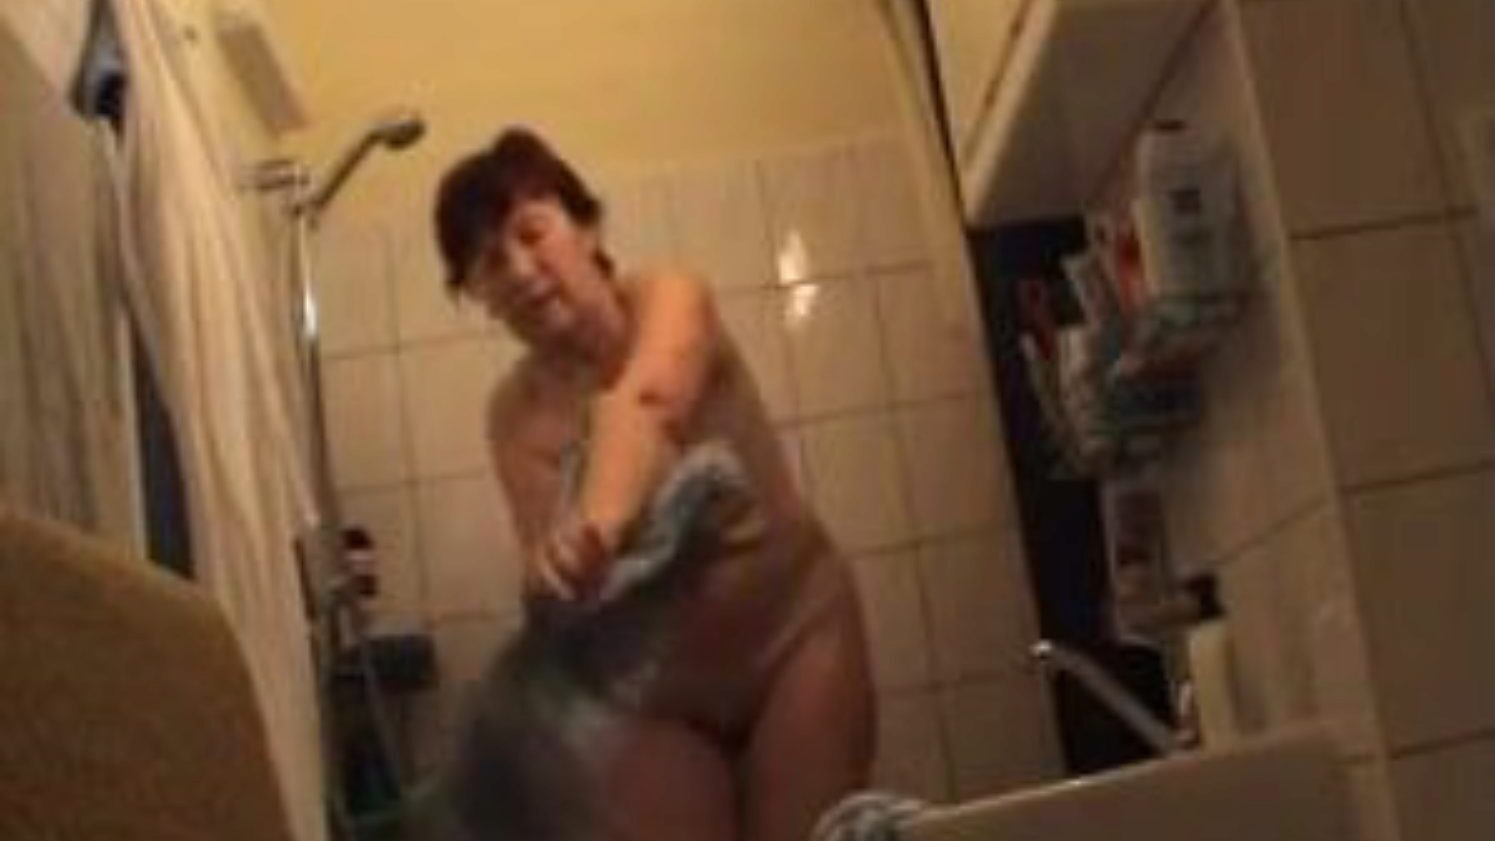 γερμανική γιαγιά γυμνή στο μπάνιο, δωρεάν γερμανική πορνό βίντεο διαφήμισης γερμανική γιαγιά γυμνή στο μπάνιο σκηνή ταινία στο xhamster, ο μεγαλύτερος ιστότοπος σεξ σεξ με τόνους δωρεάν γερμανών γυμνή γιαγιά και ώριμα πορνογραφικά βίντεο